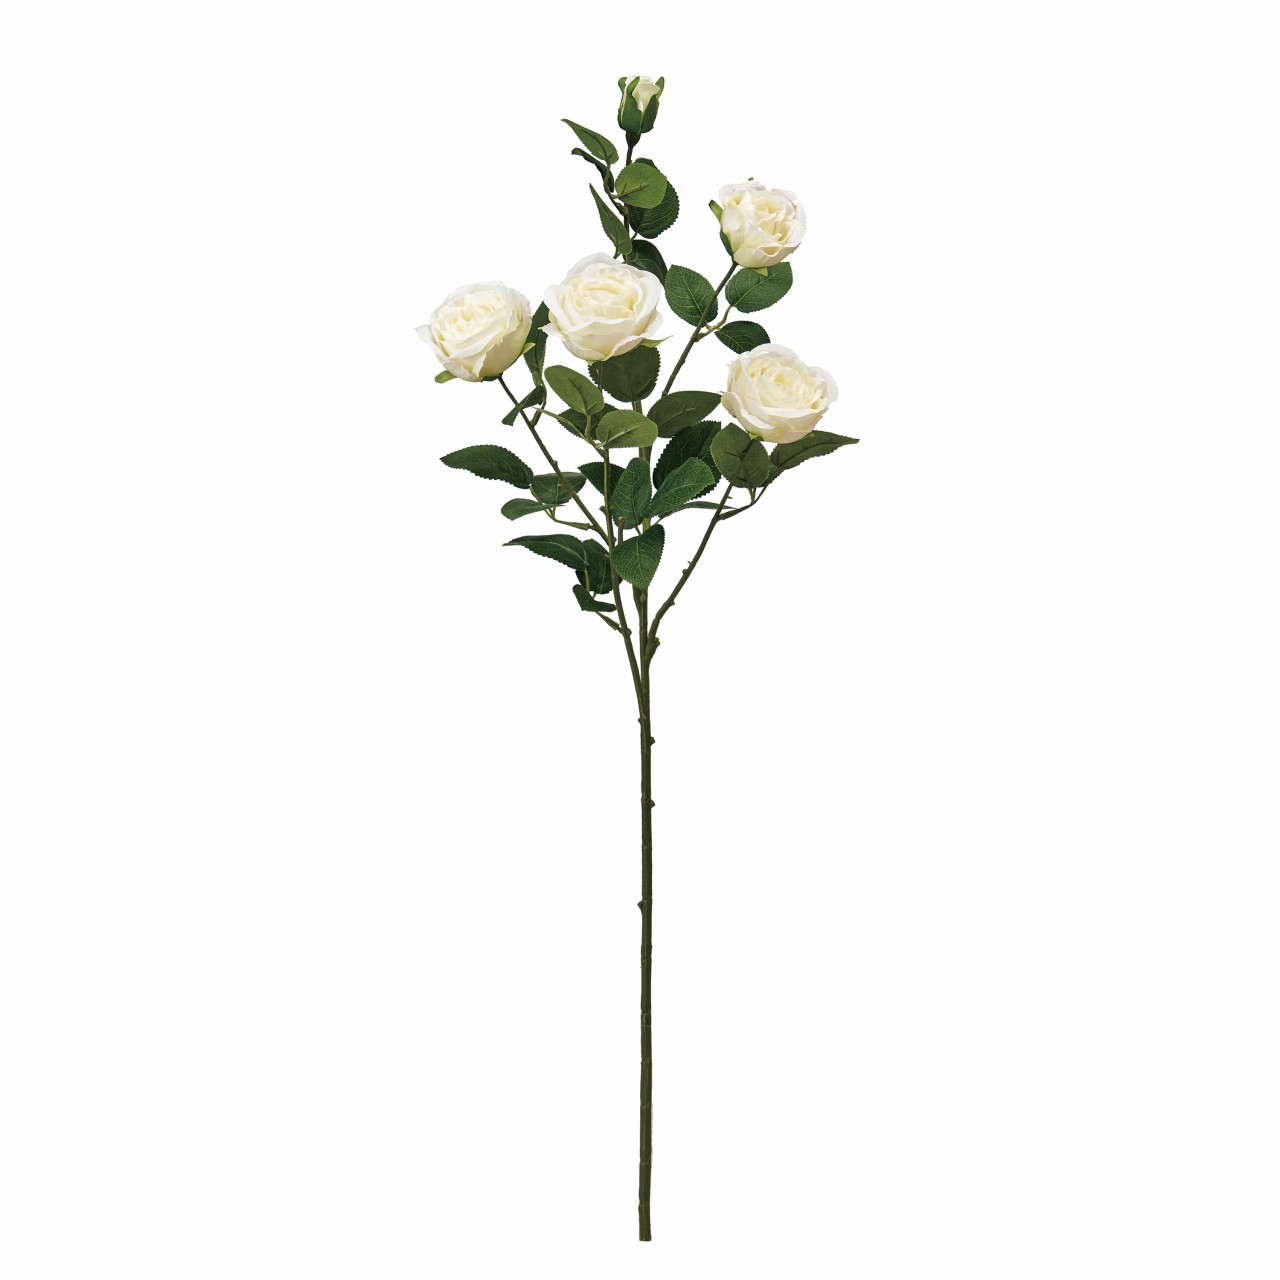 マイフラ 通販 Magiq プリマスプレーローズ クリーム アーティフィシャルフラワー 造花 ローズ バラ Fm 001 クリーム Magiq アーティフィシャルフラワー 造花 全国にmagiq 花器 花資材などをお届けします